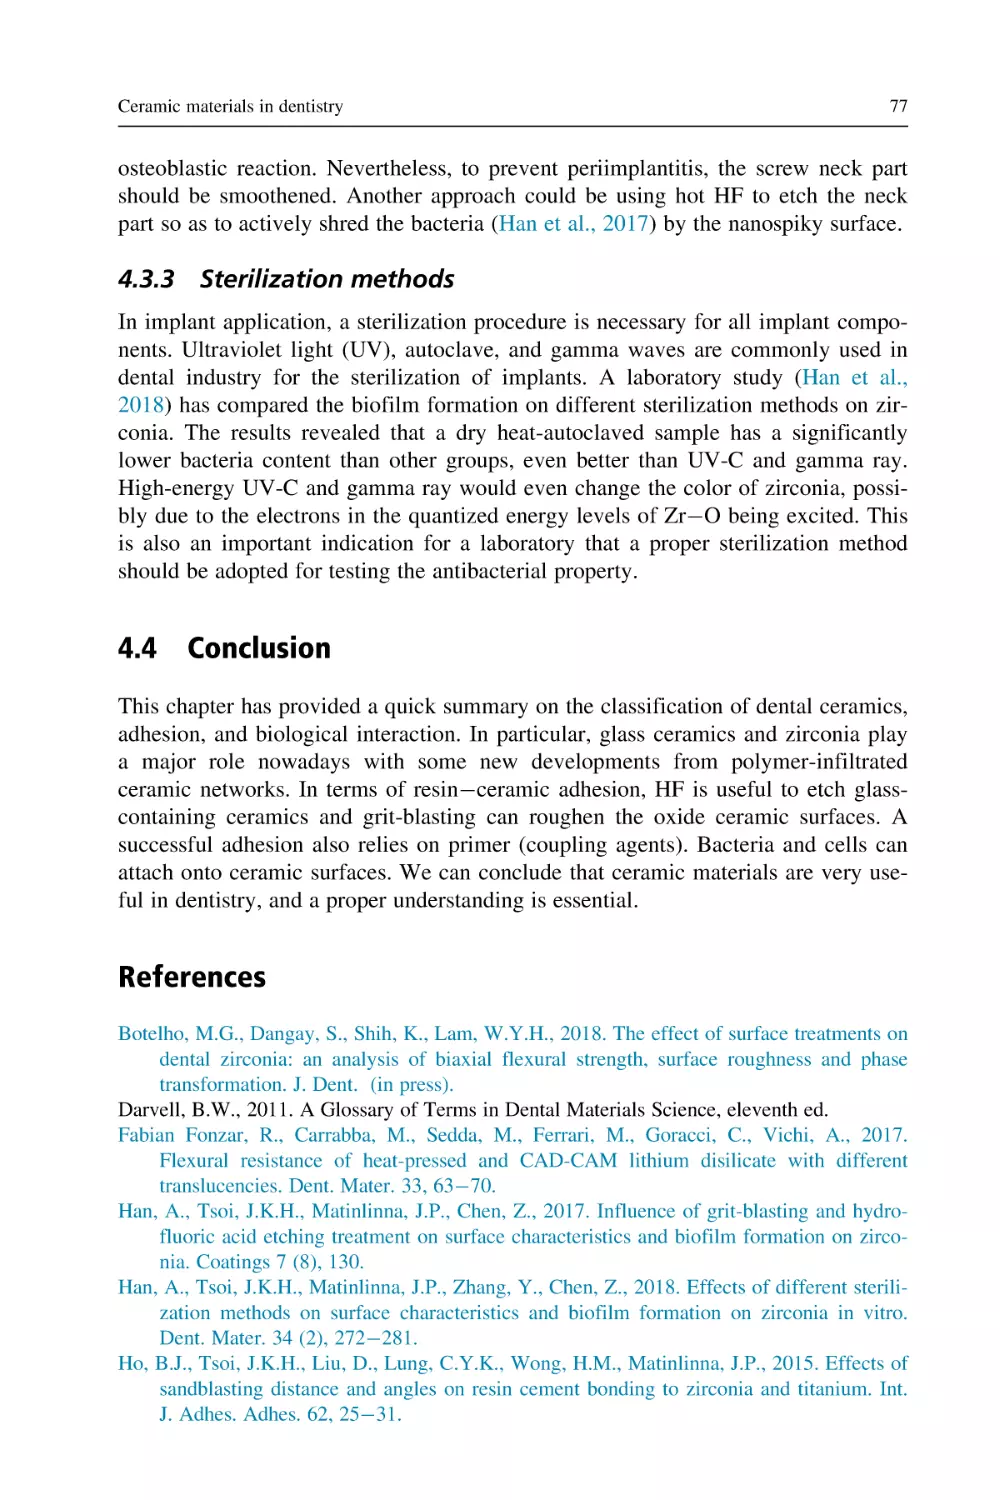 4.3.3 Sterilization methods
4.4 Conclusion
References